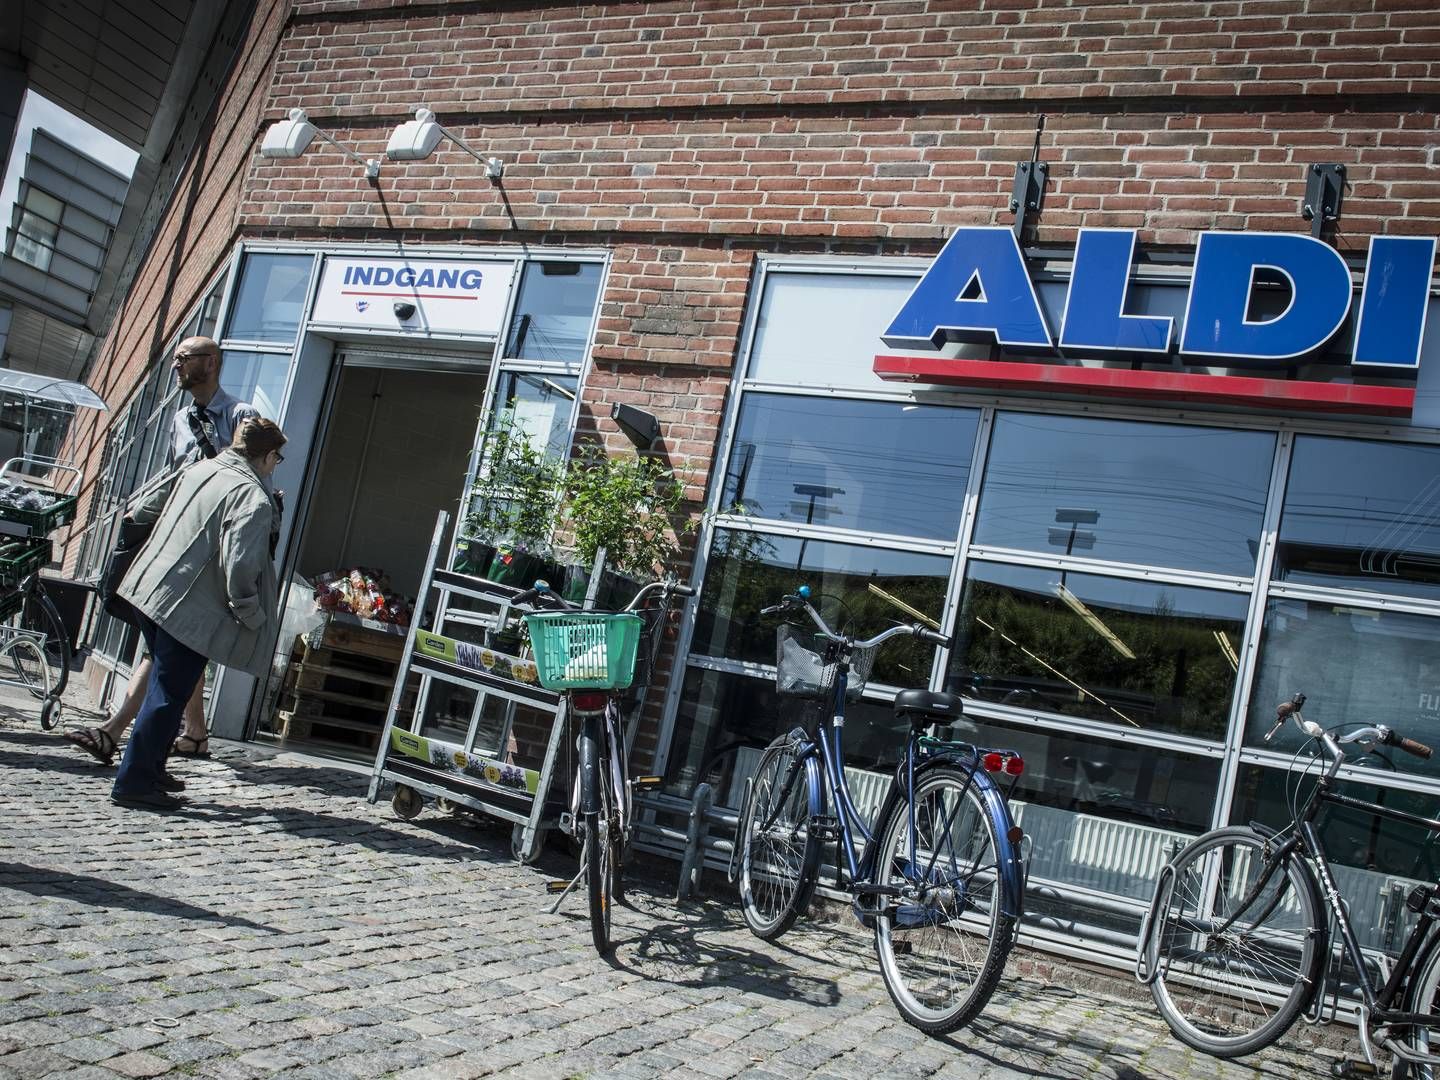 Snart er det slut med Aldi-kæden i Danmark, når hovedparten af butikkerne overgår til Rema 1000. | Foto: Linda Johansen